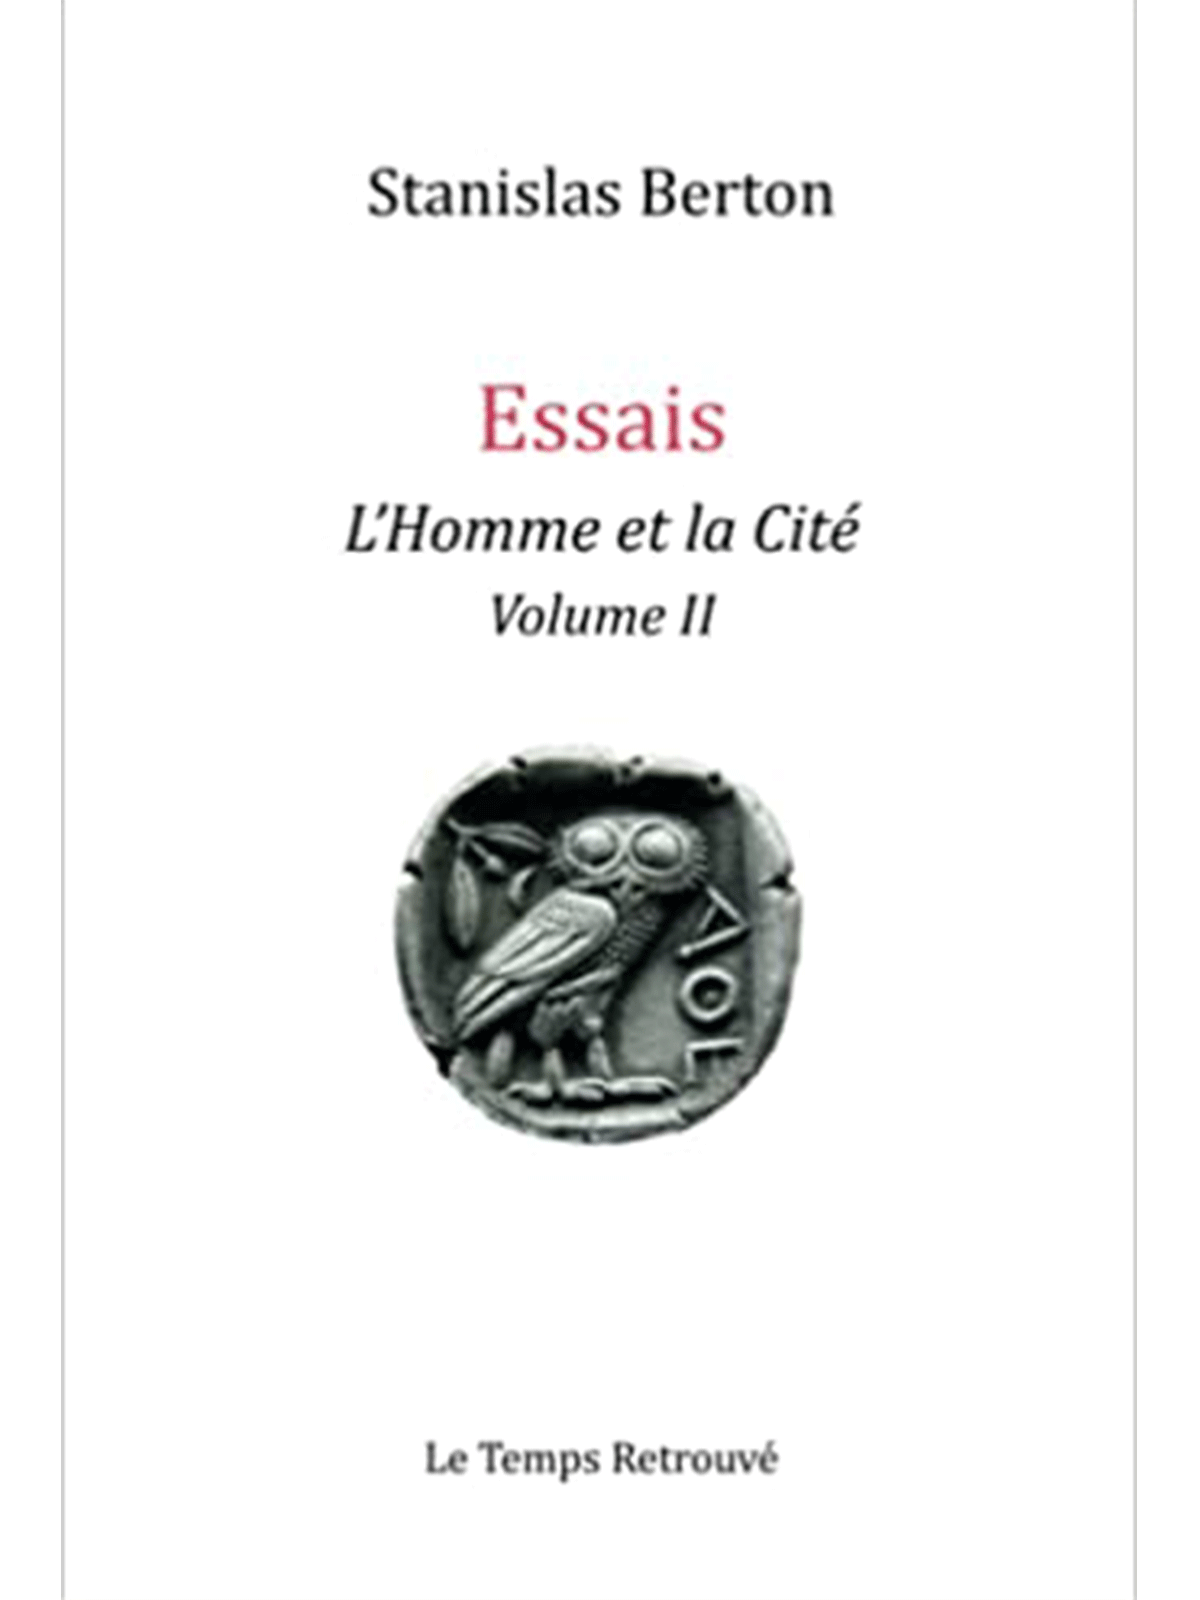 Stanislas Berton : L'homme et la Cité (Volume II)